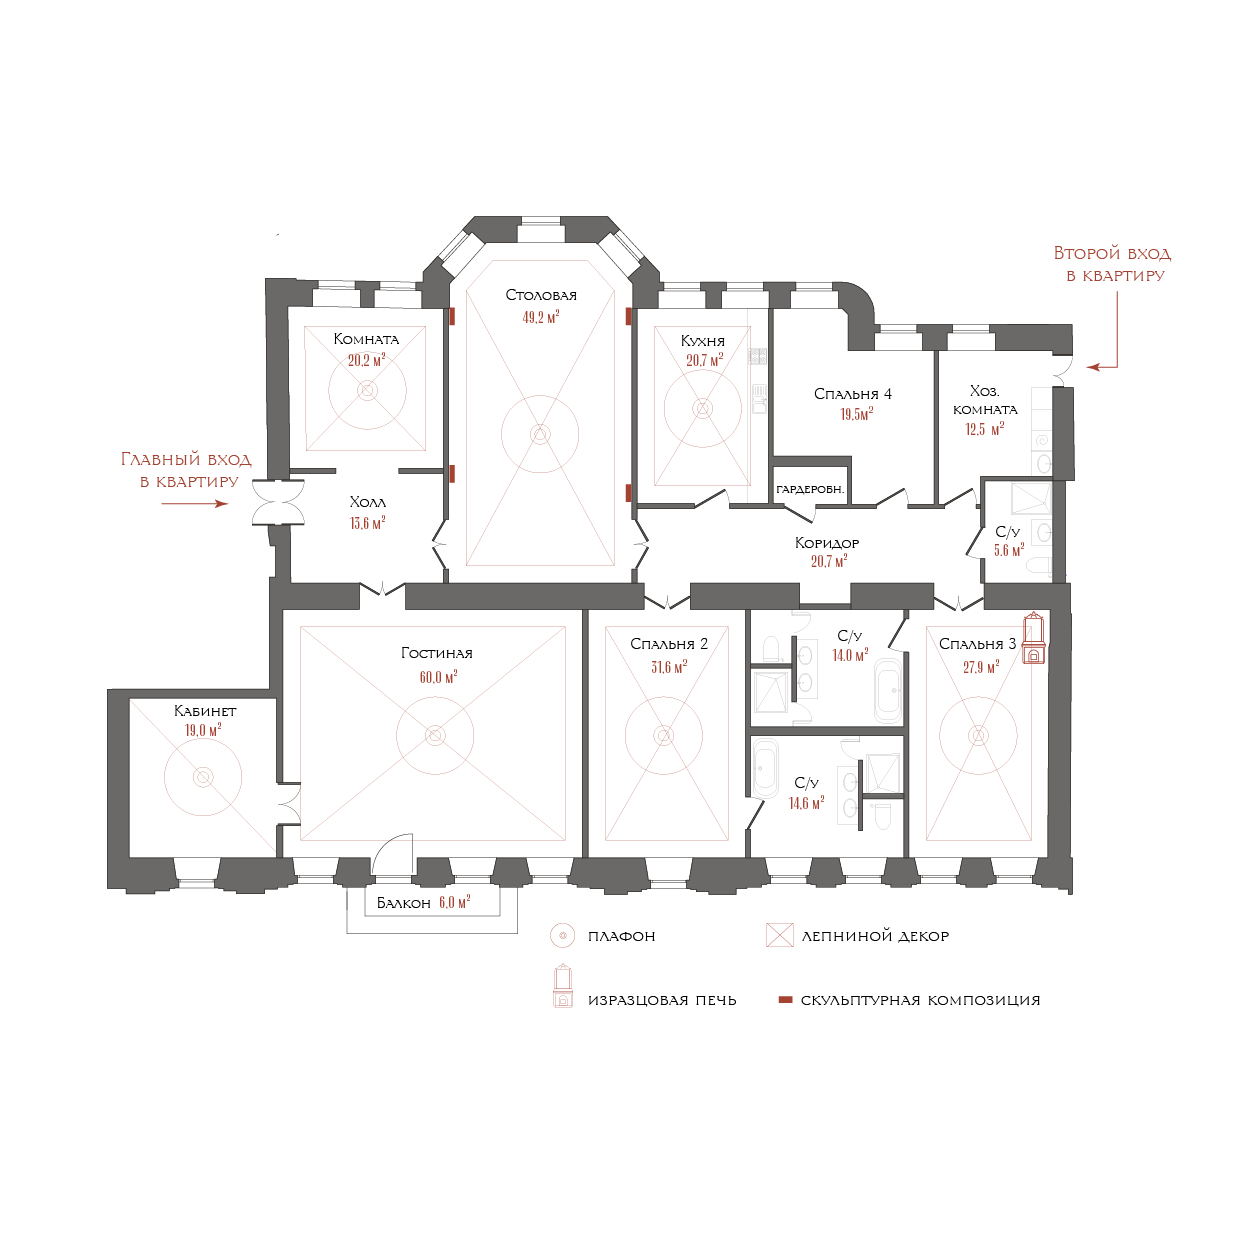 7-комнатная квартира  №9 в Три грации: 327.9 м², этаж 5 - купить в Санкт-Петербурге